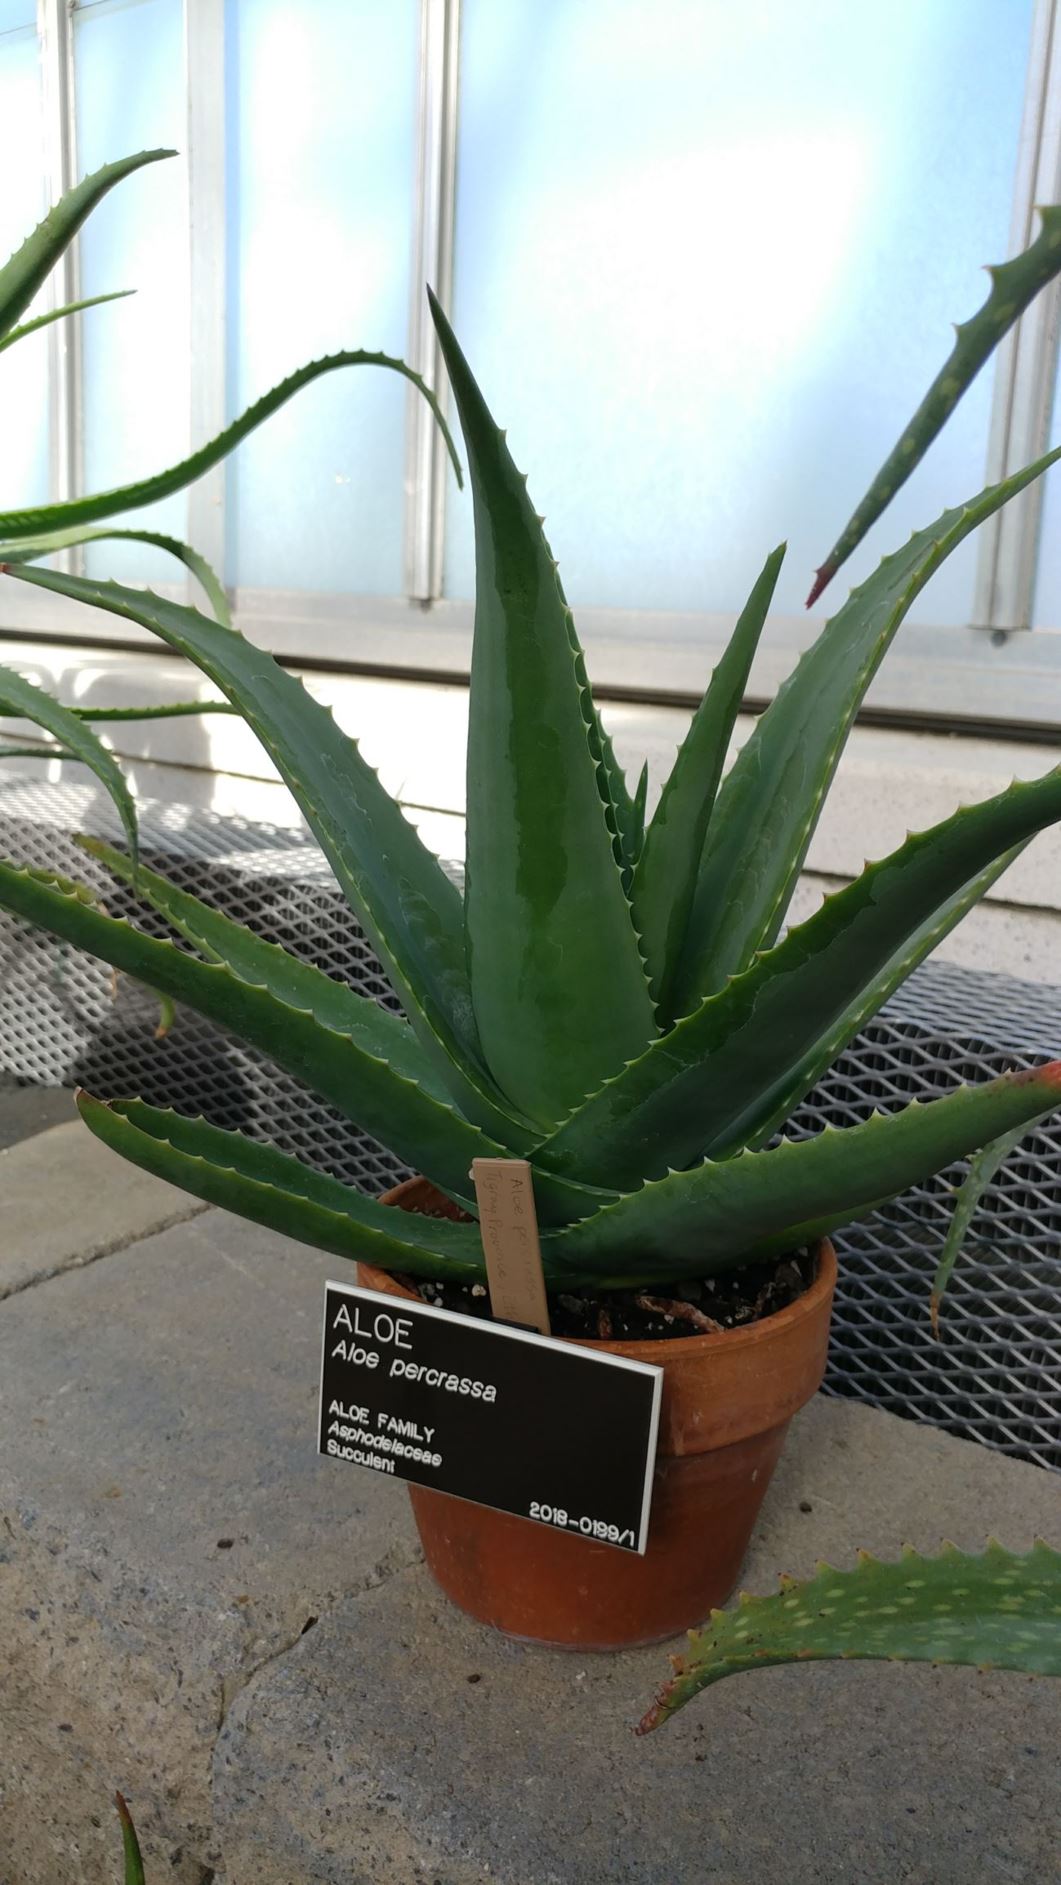 Aloe percrassa - aloe